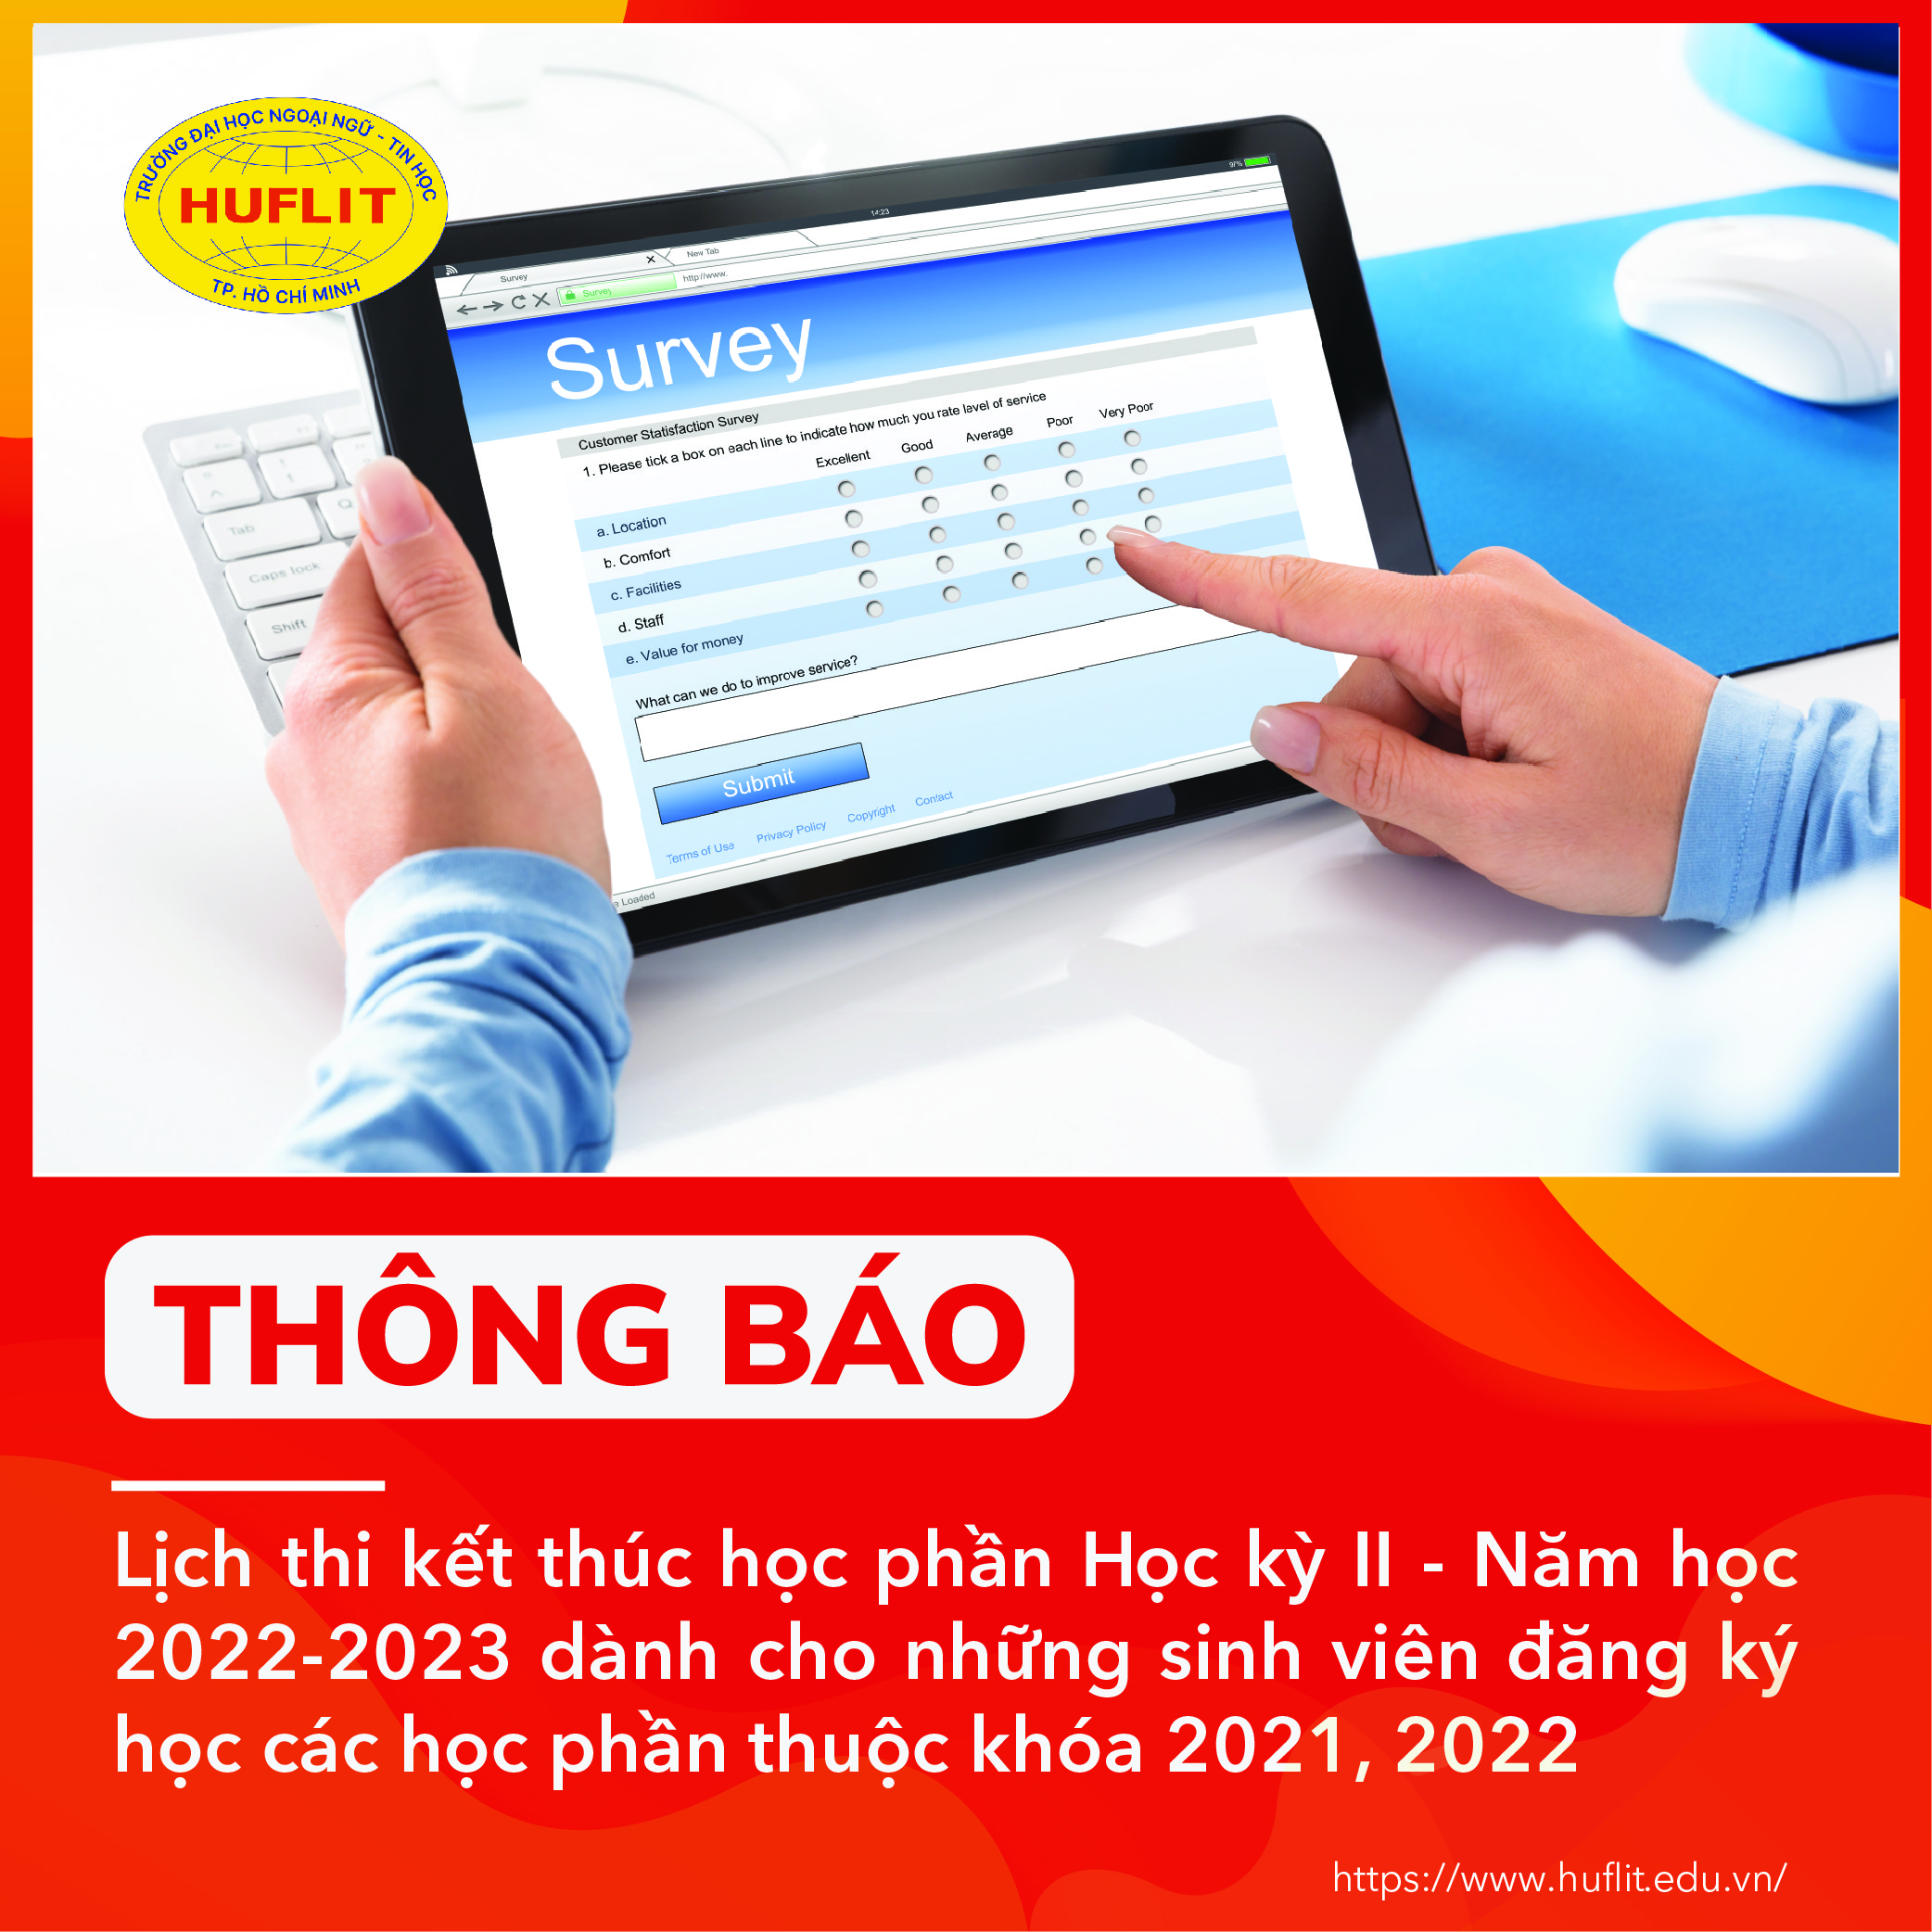 THONG BAO LICH THI 2023_1 copy 3